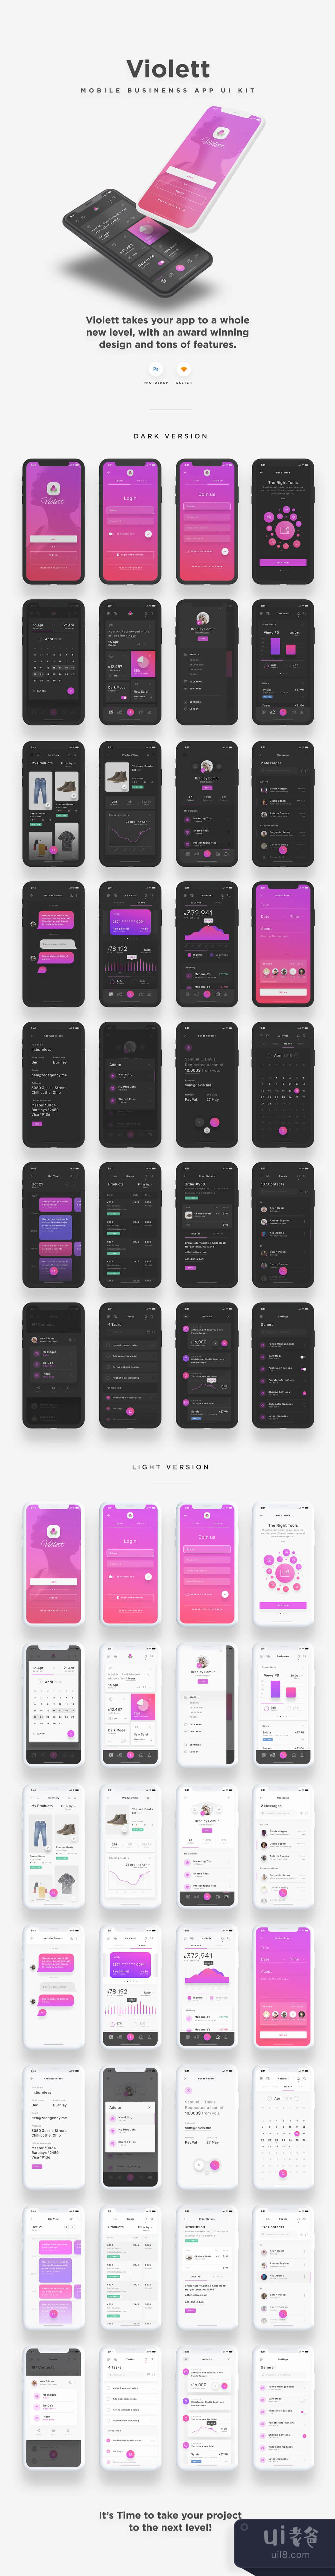 Violett iOS UI Kit (Violett iOS UI Kit)插图1